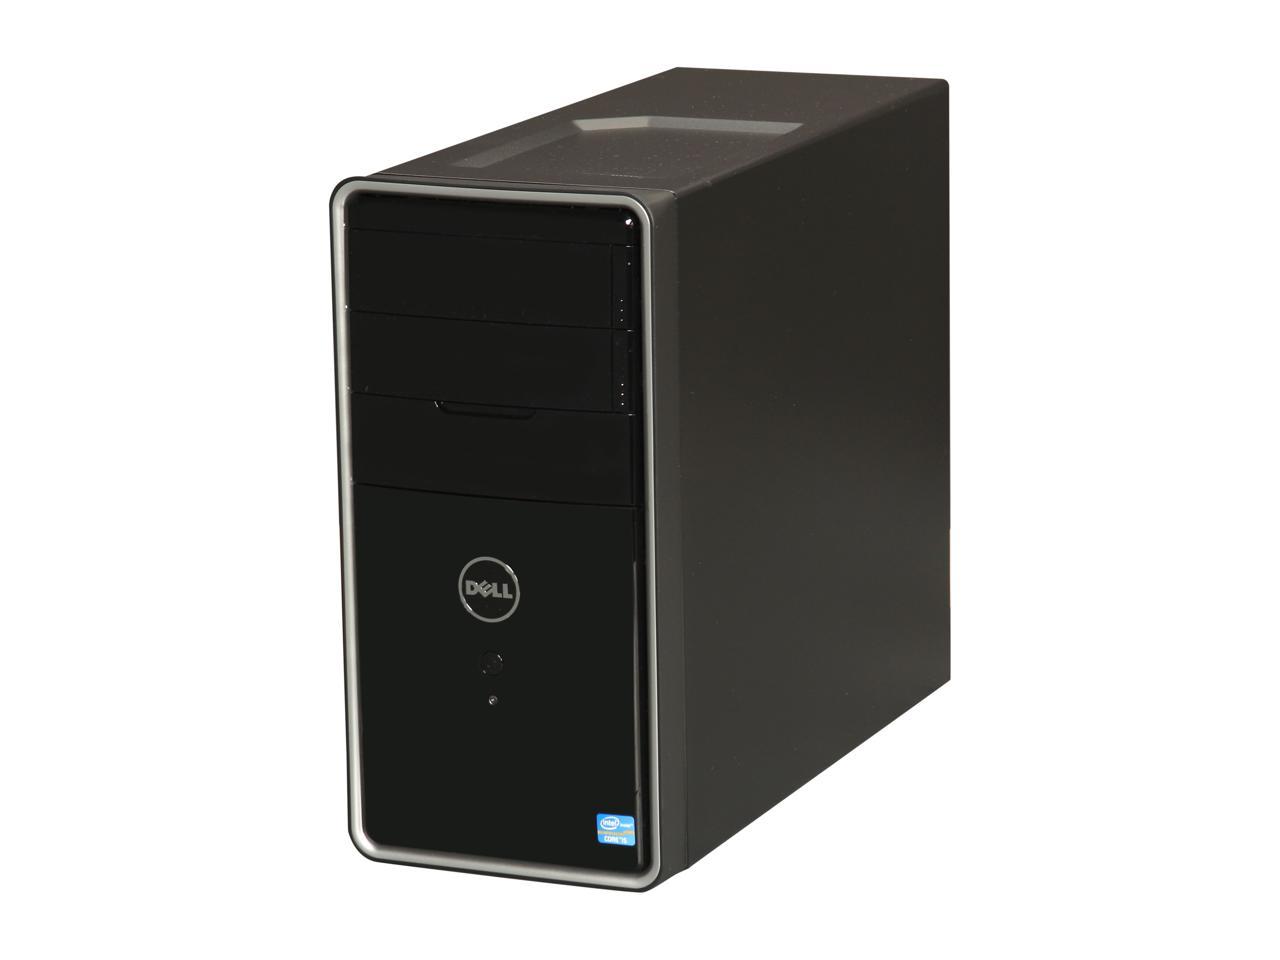 Dell Inspiron 660 Core i3